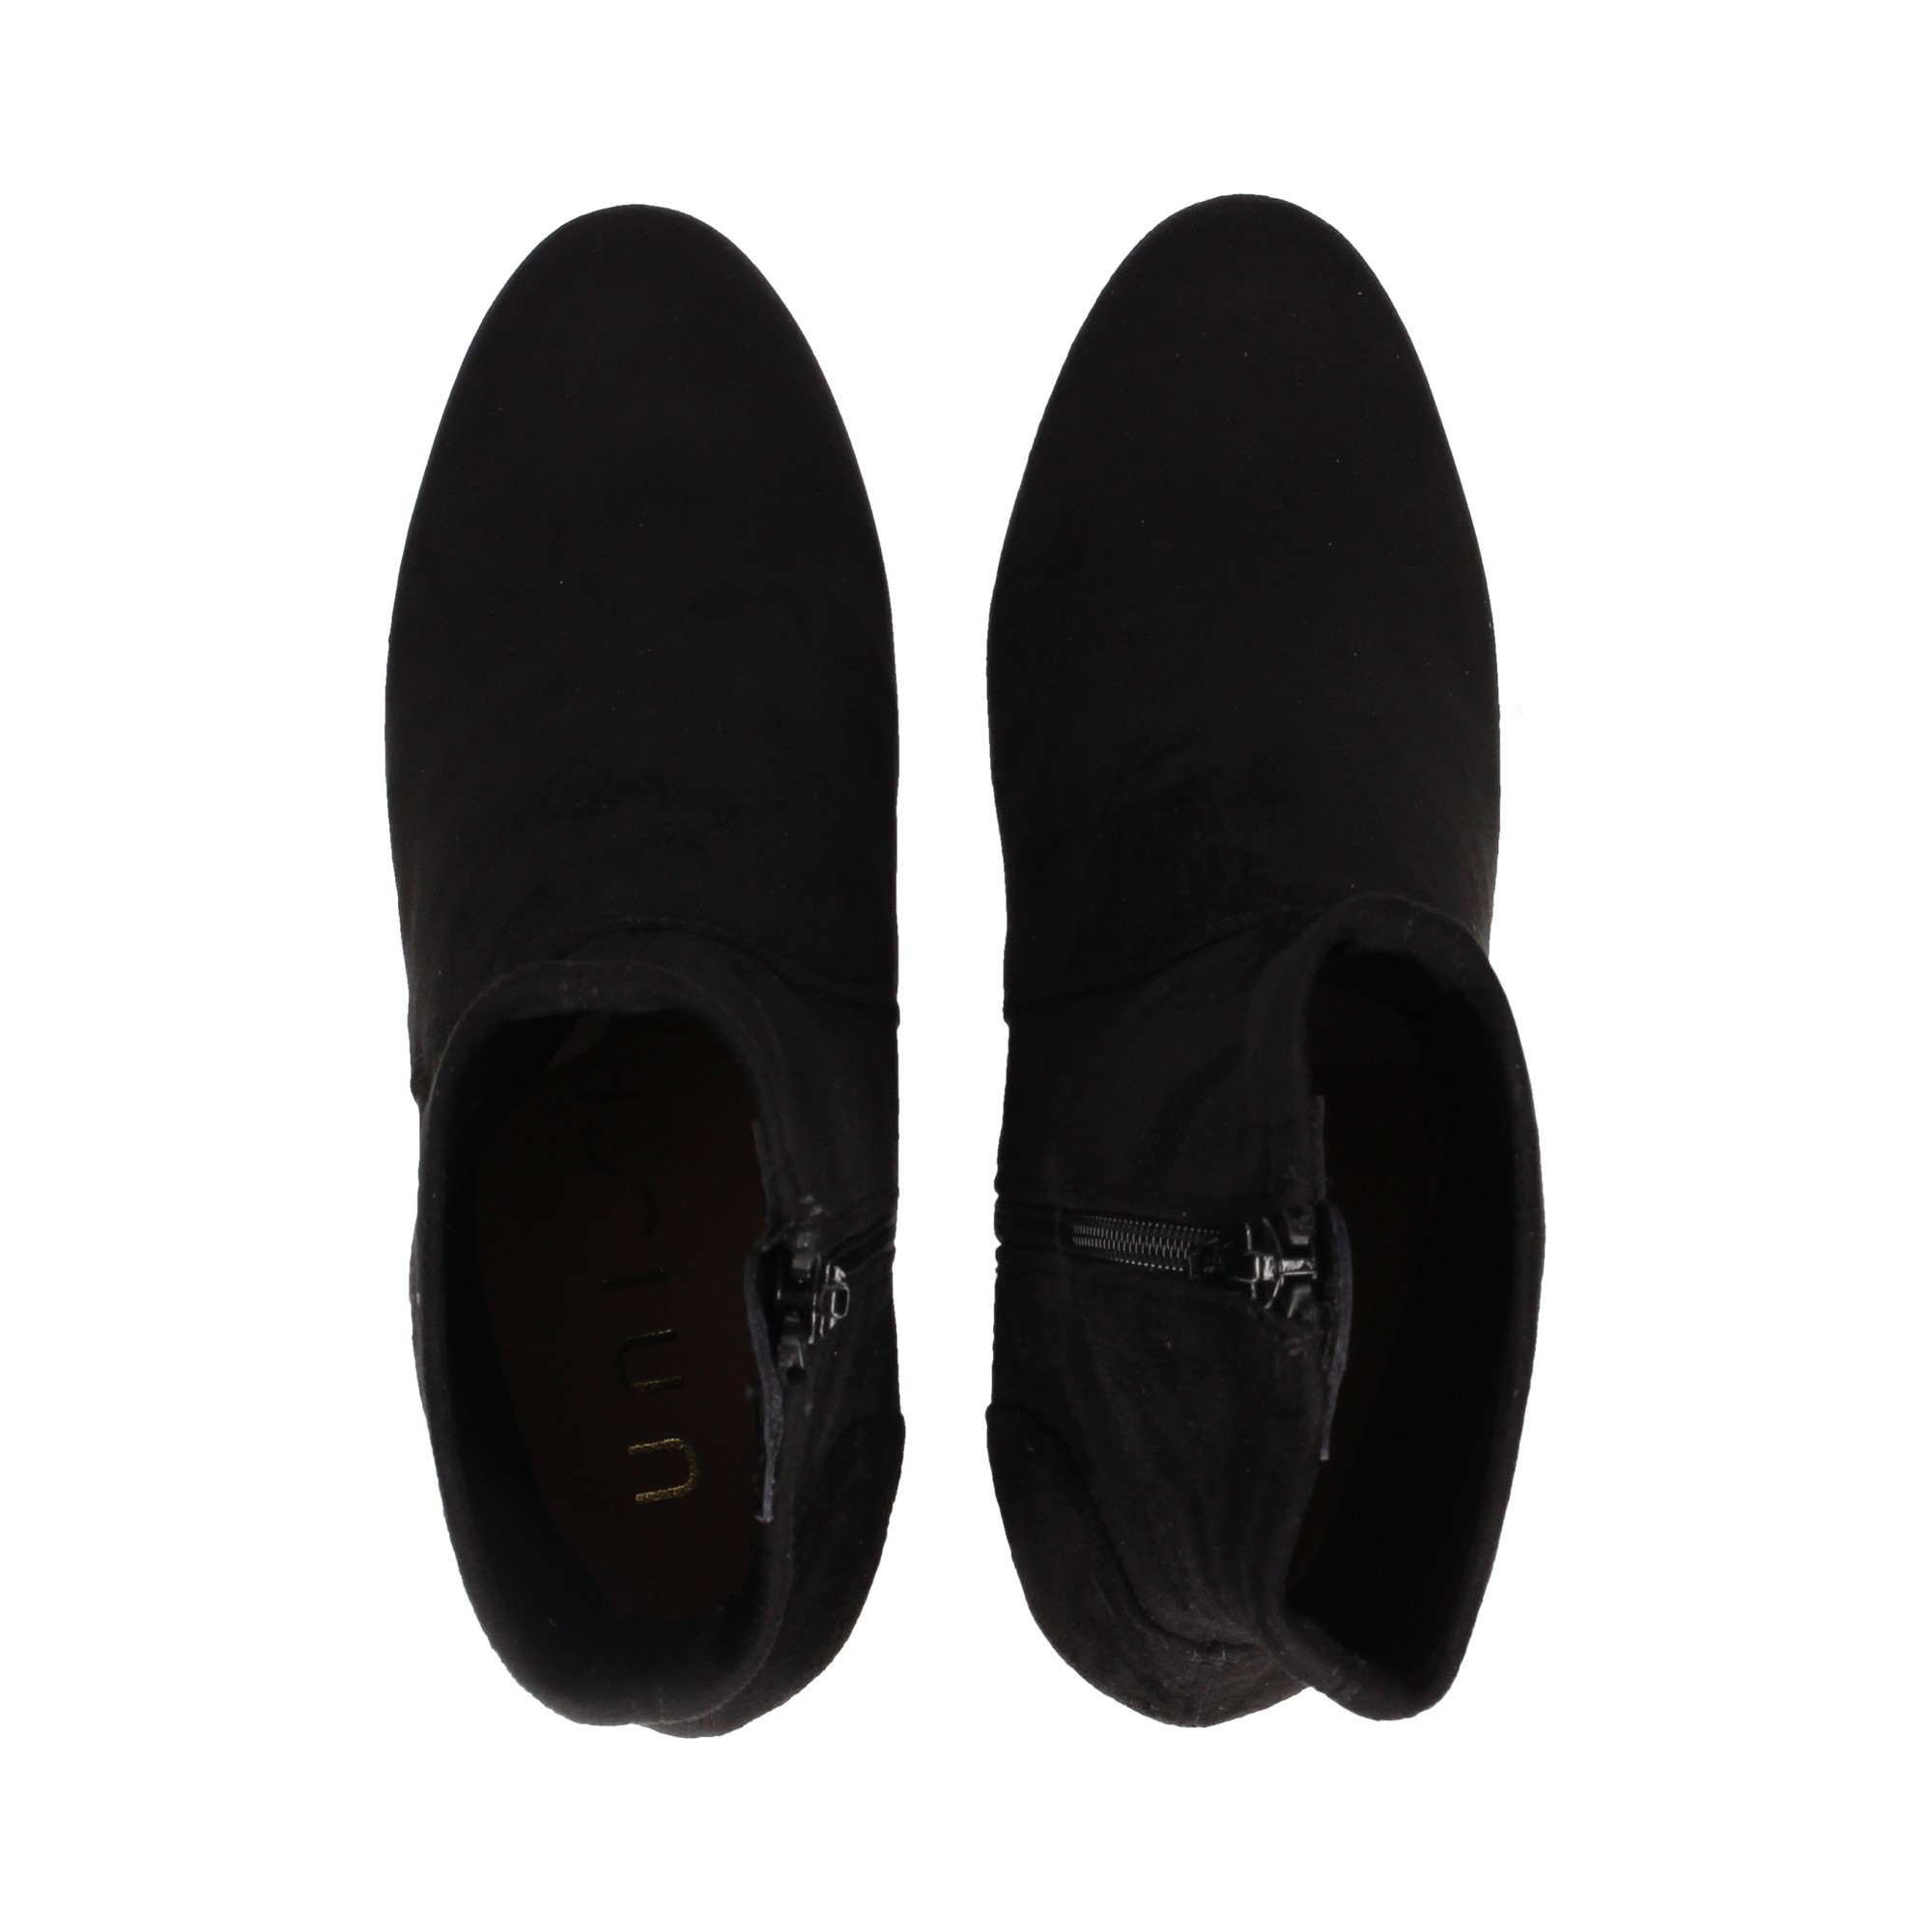 heel-boot-zipper-lycra-black-front